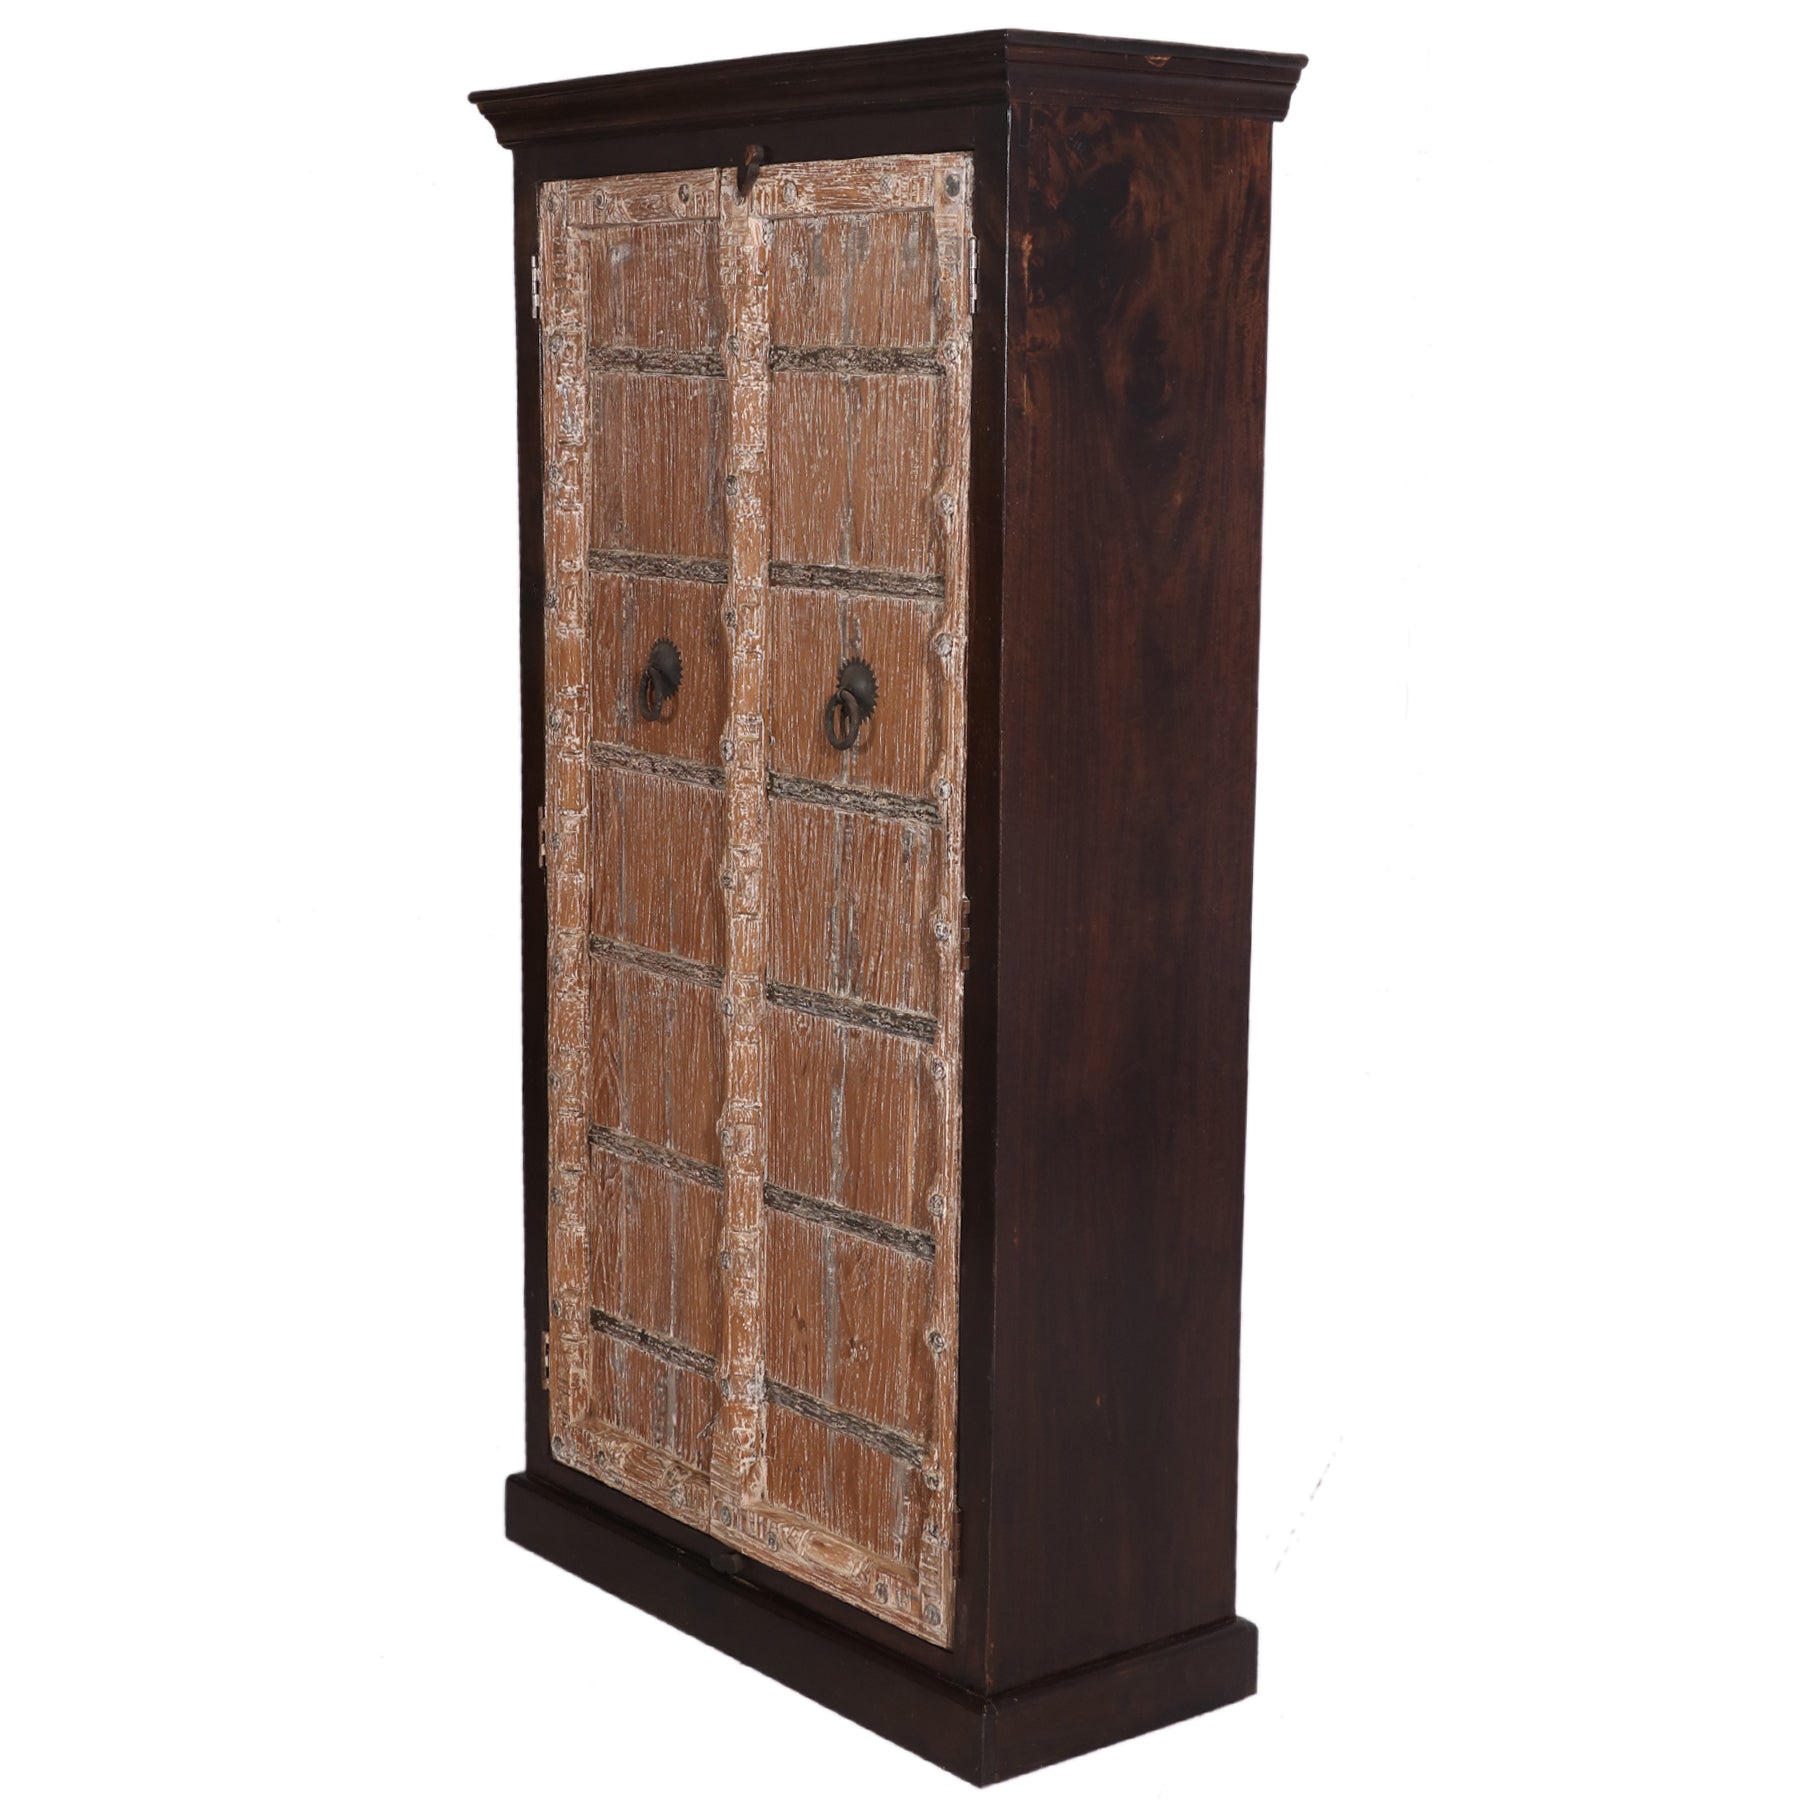 Rustic Double-Door Cabinet Wardrobe